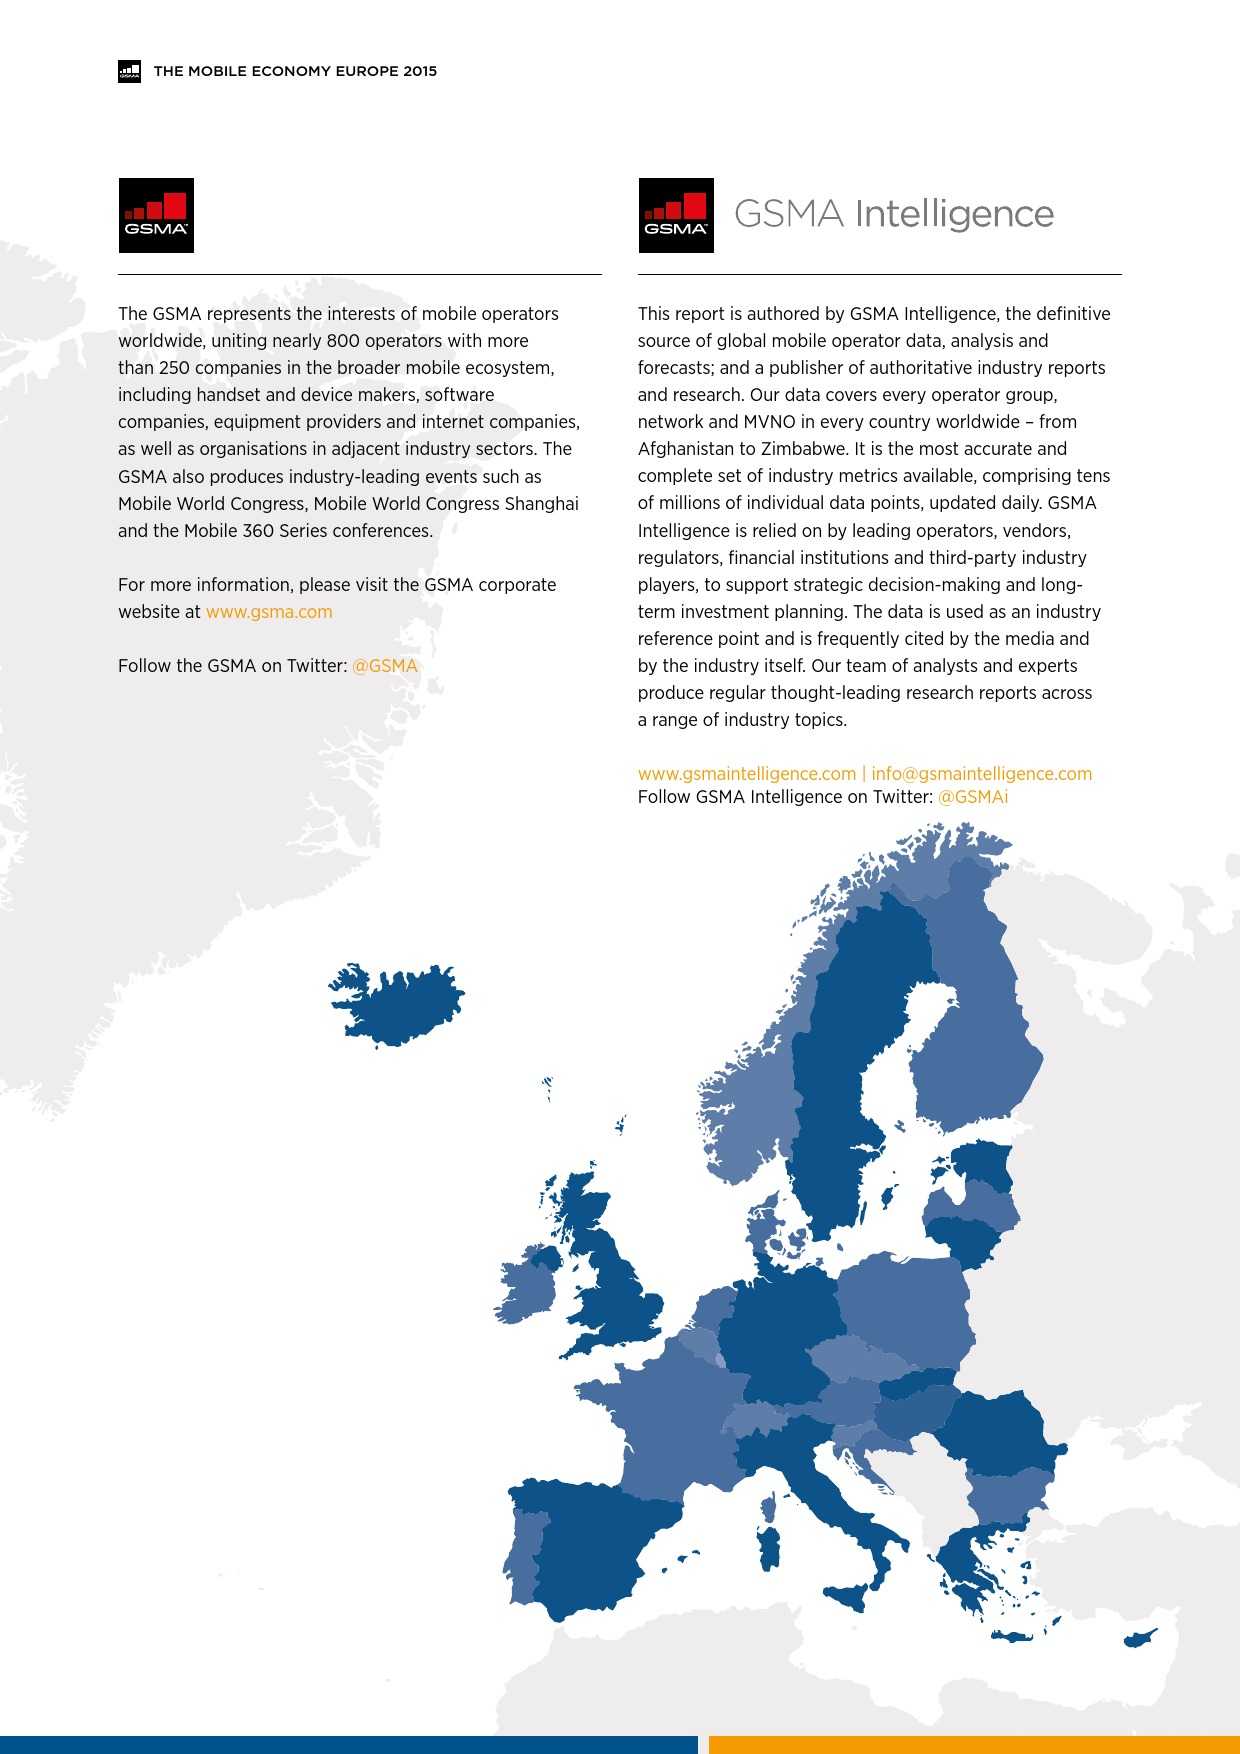 GSMA：移动经济 – 2015欧洲（完整版）_000002